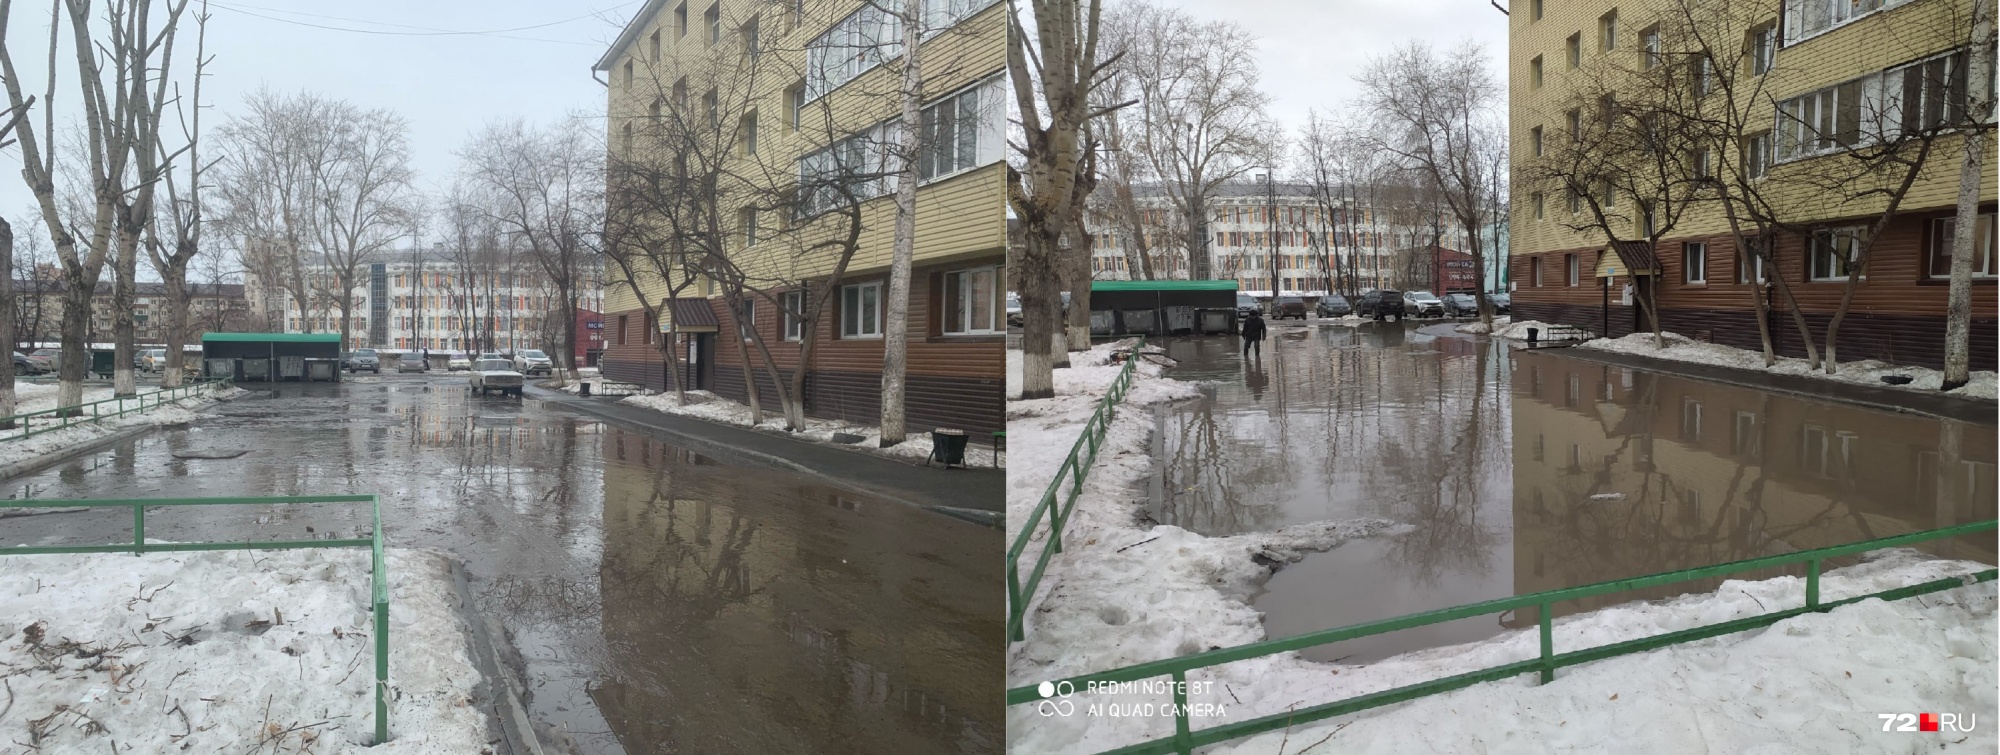 Еще утром 5 апреля во дворе на улице Харьковской была вода — на фото она справа. Через три часа осталась только грязь